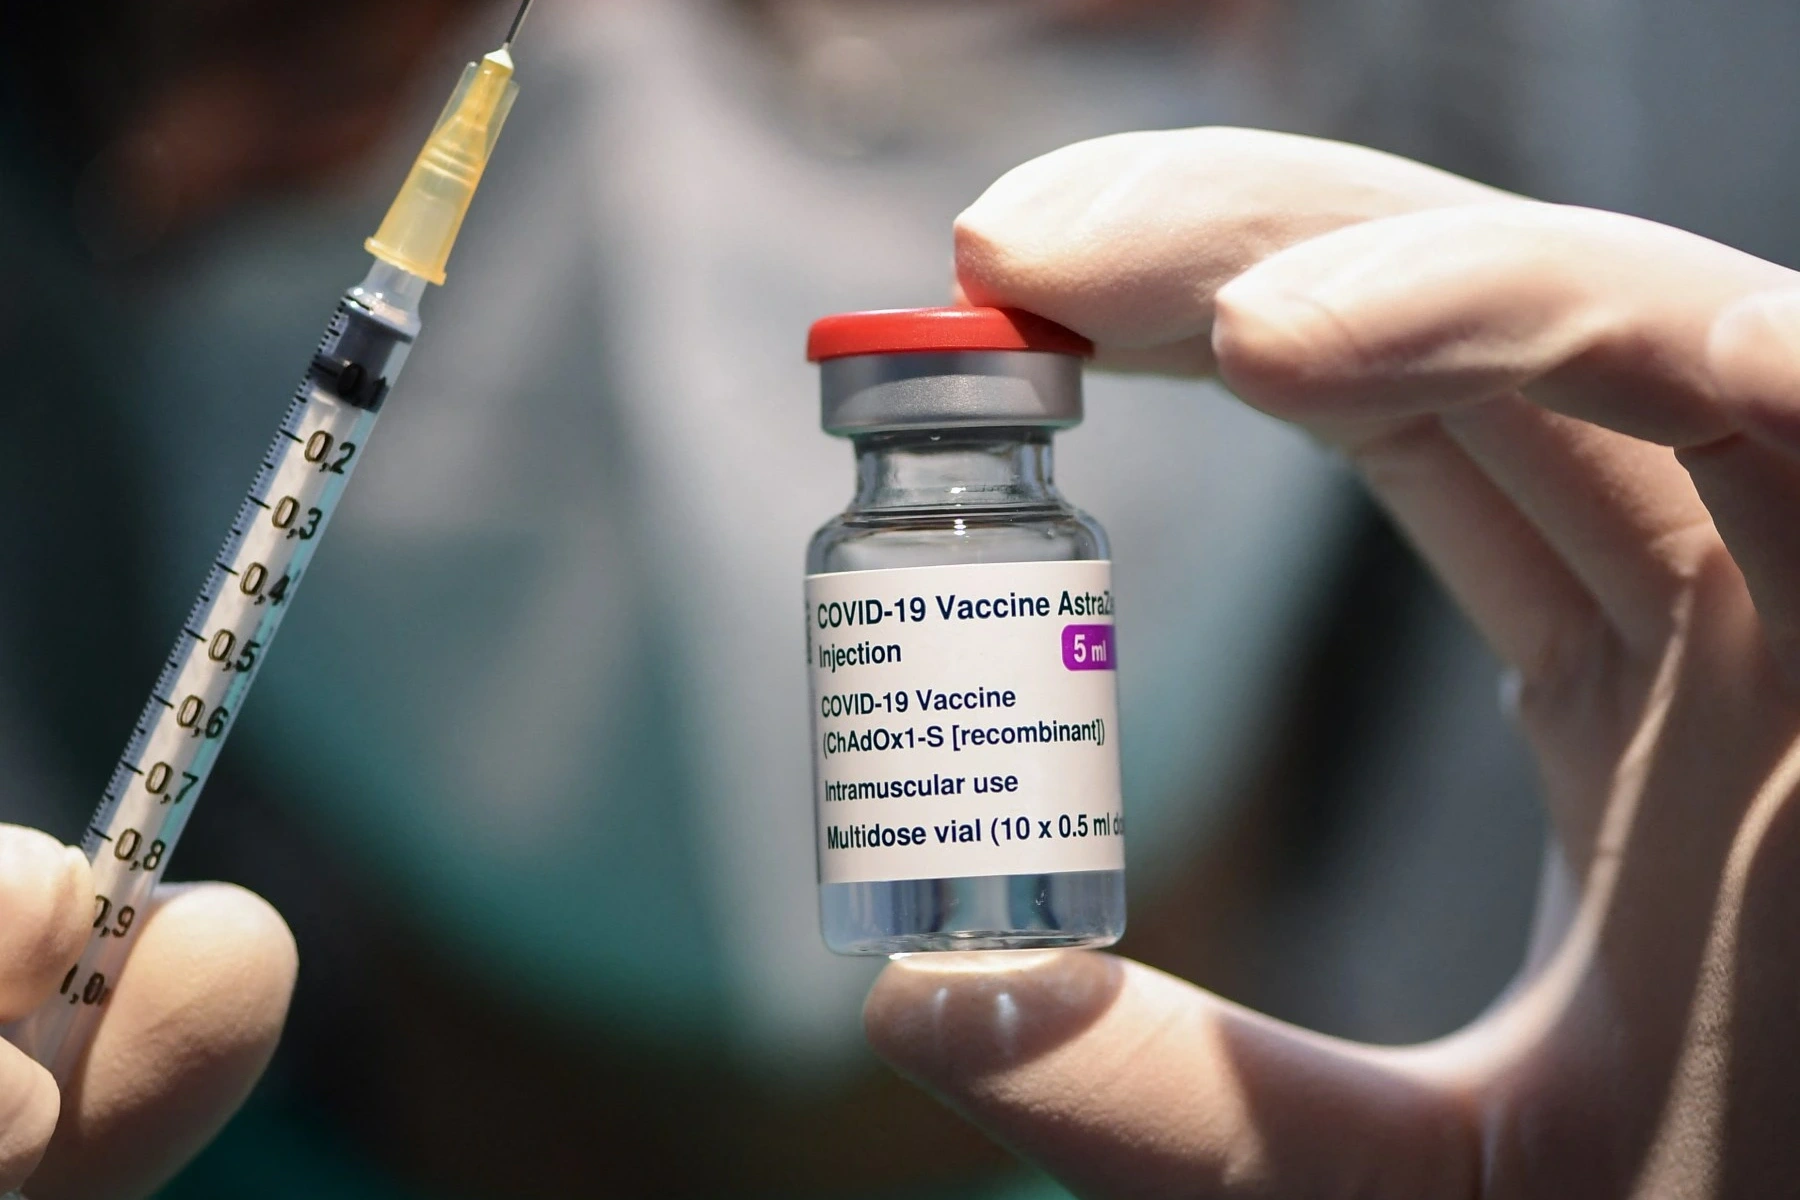 Vaccine Covid-19 của Oxford-AstraZeneca sẽ được thu hồi trên toàn cầu, theo Telegraph (Ảnh: Getty).